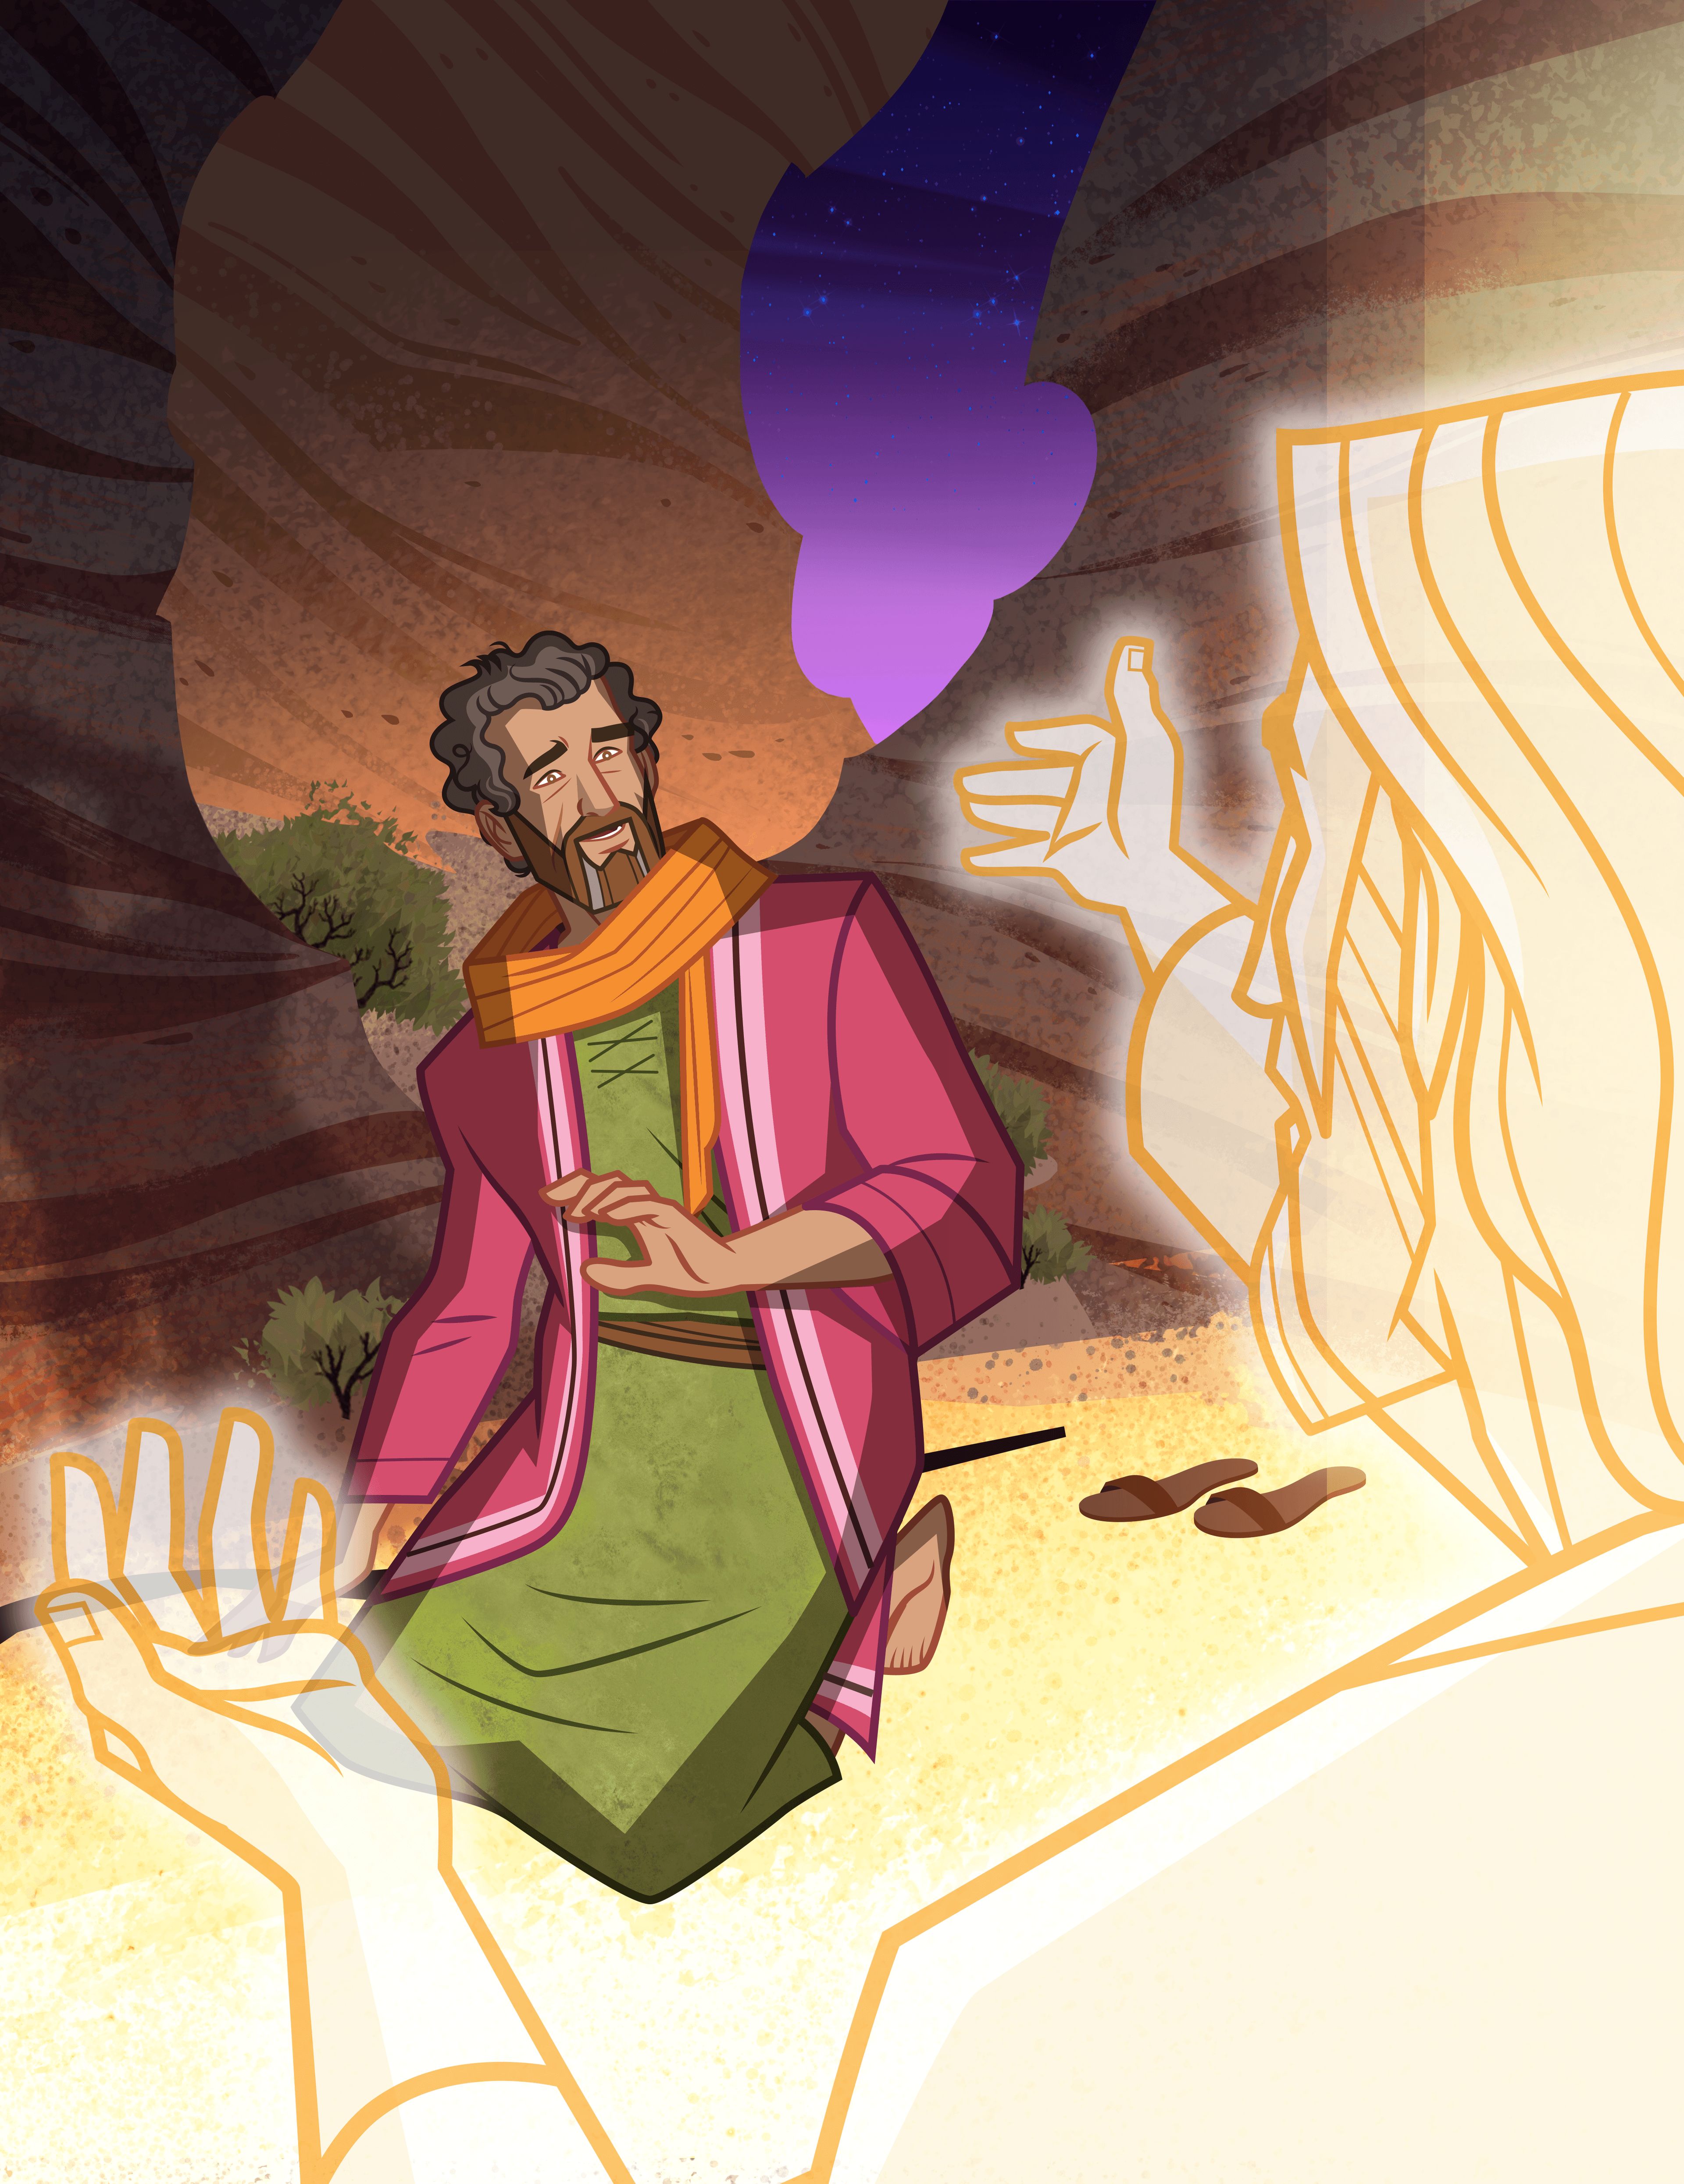 舊約經文故事的封面圖片。呈現的內容是耶和華在西奈山上向摩西顯現。